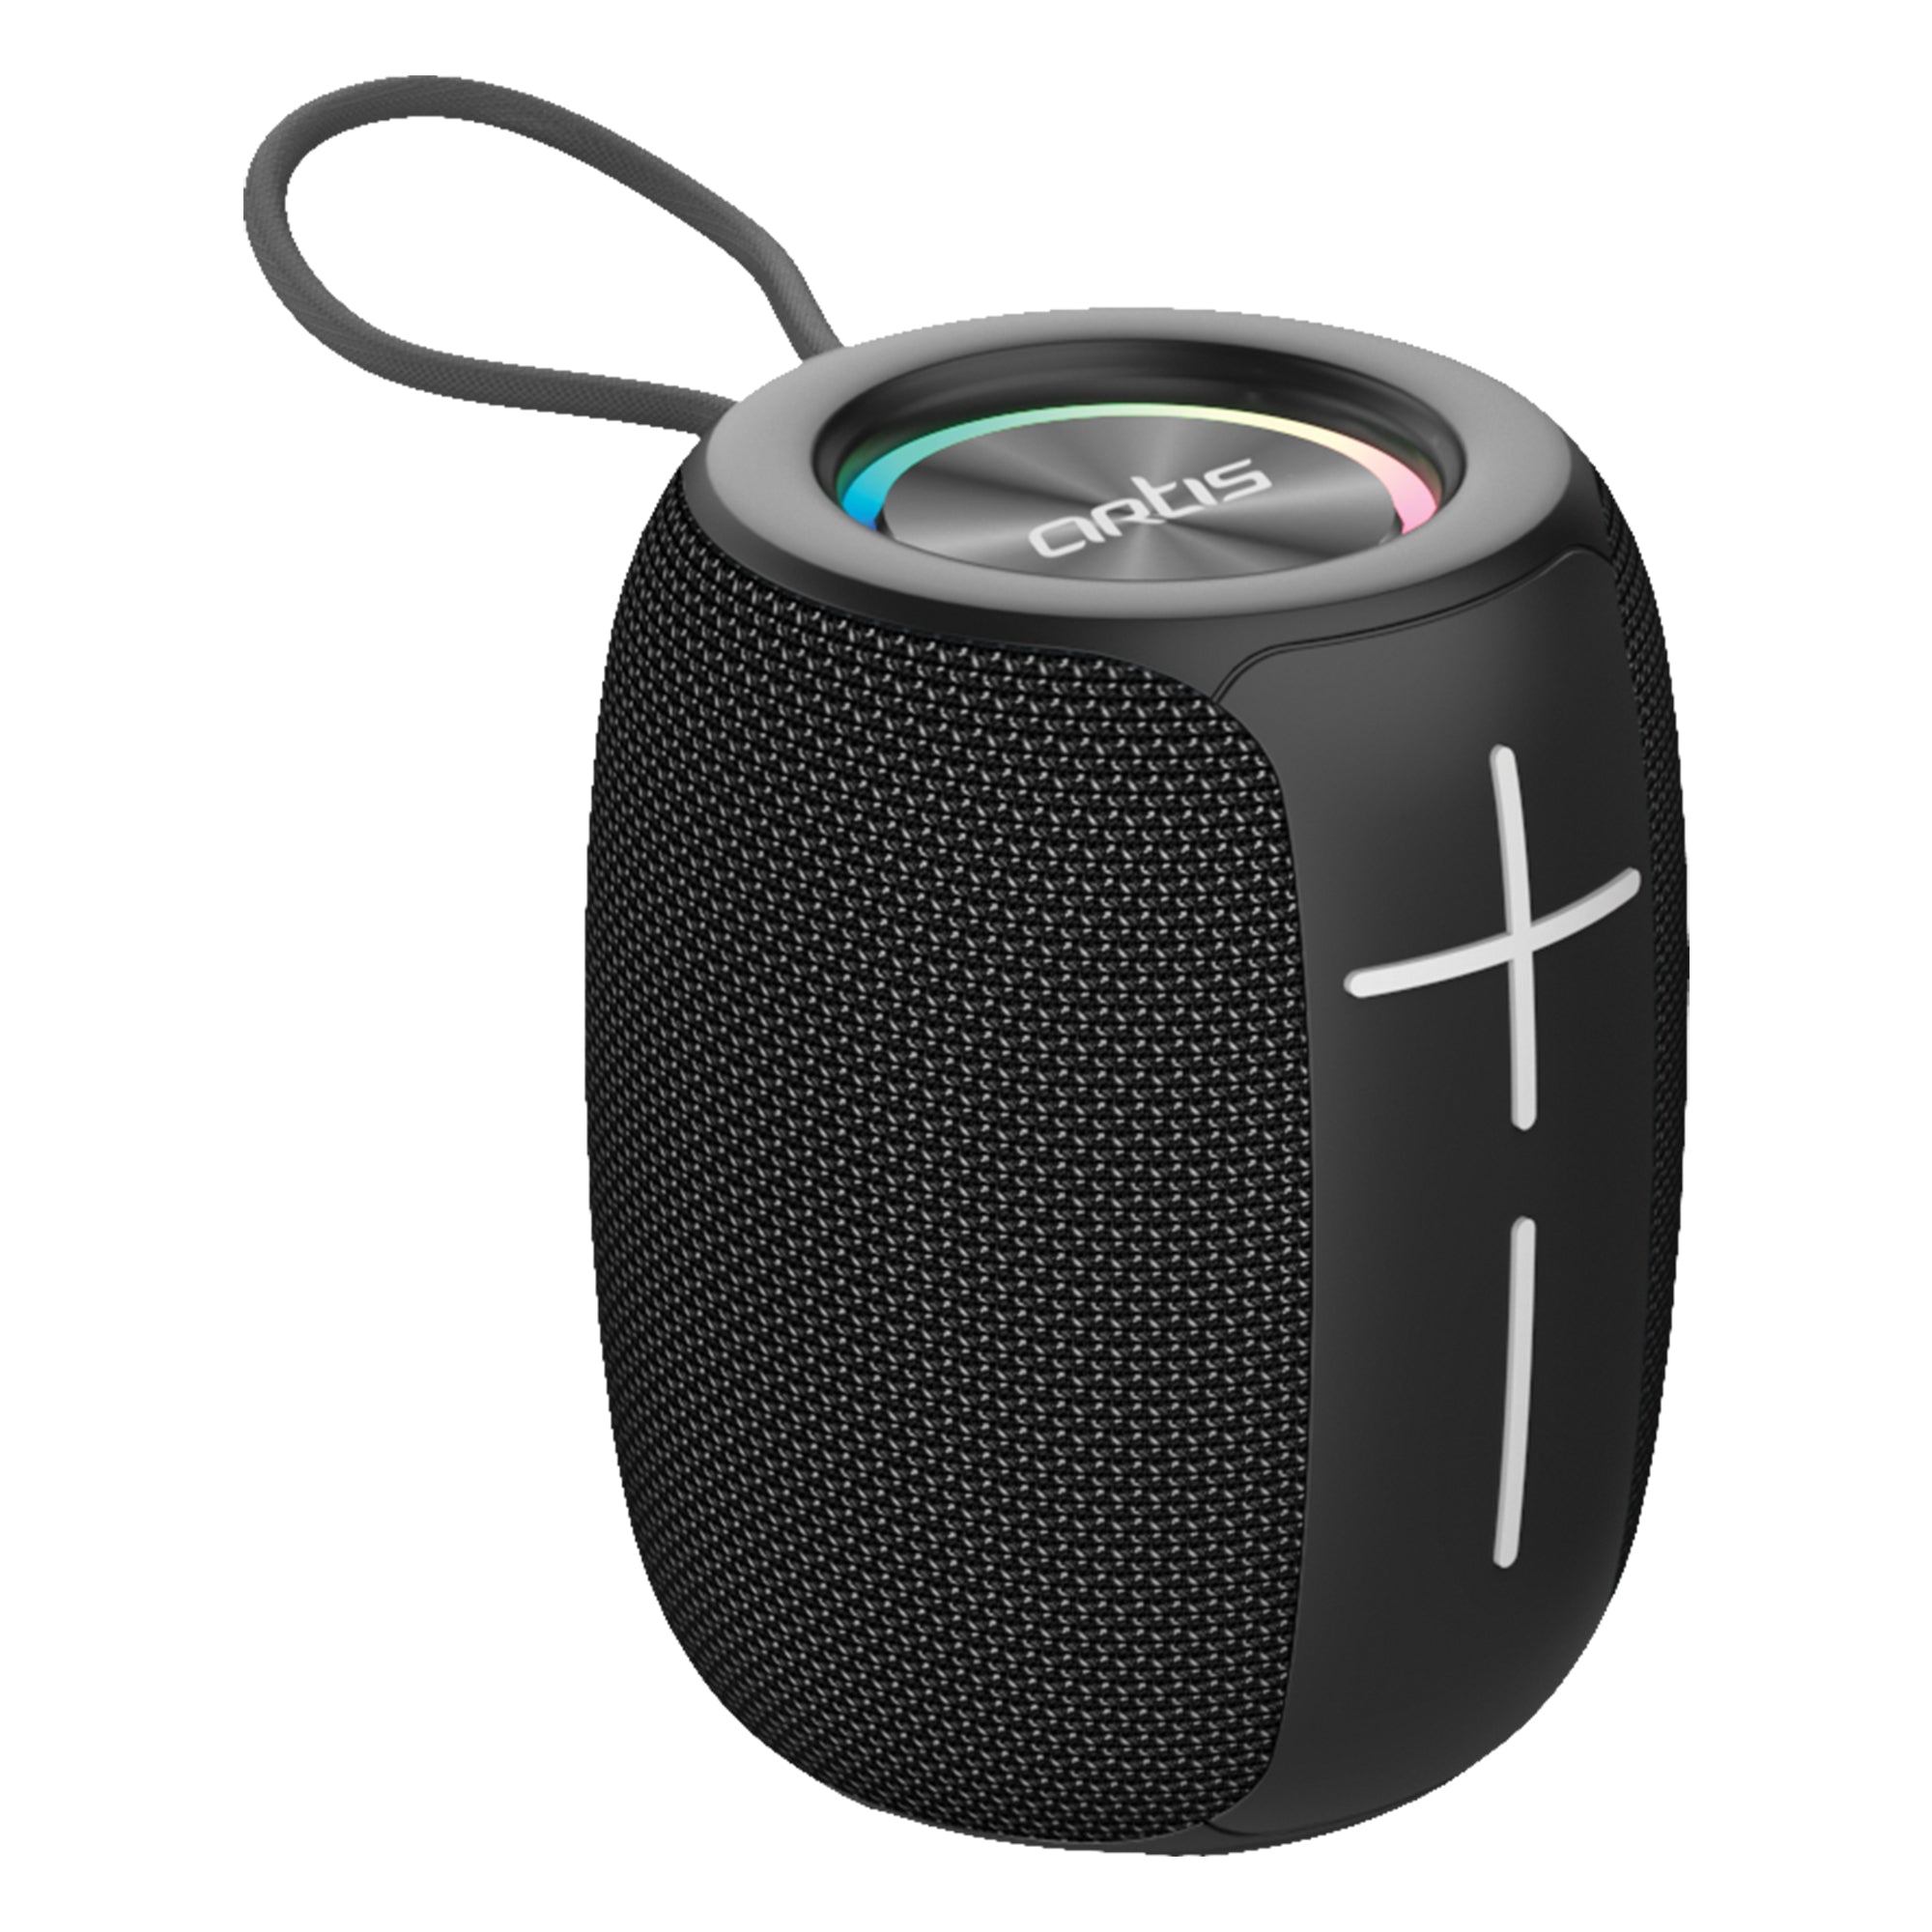 Get Together BT Portable Bluetooth Speaker